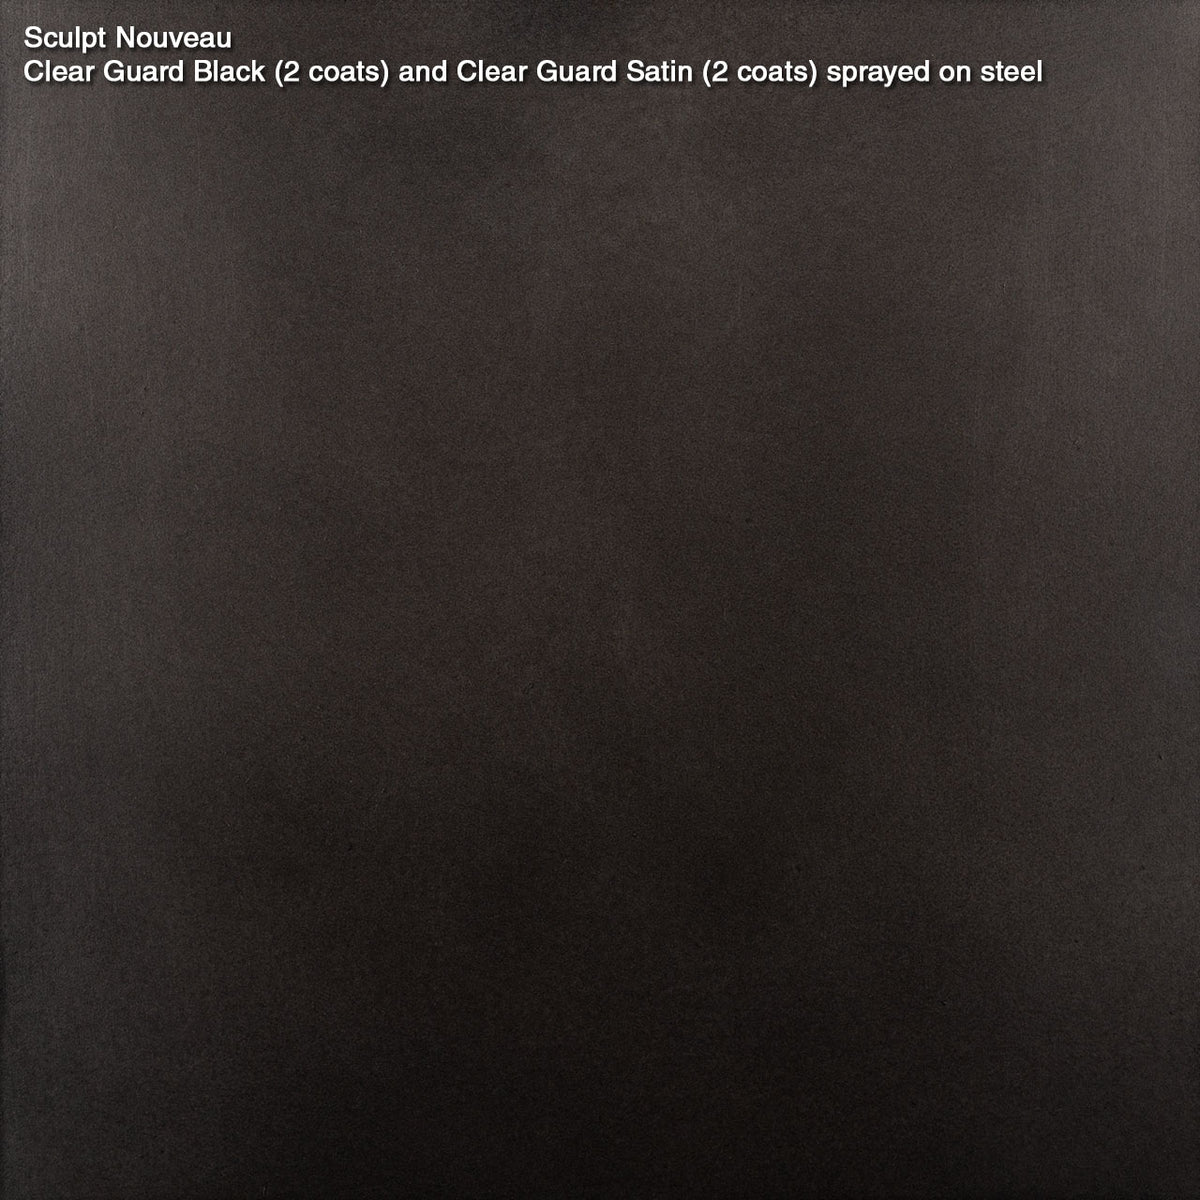 Clear Guard Black – Sculpt Nouveau